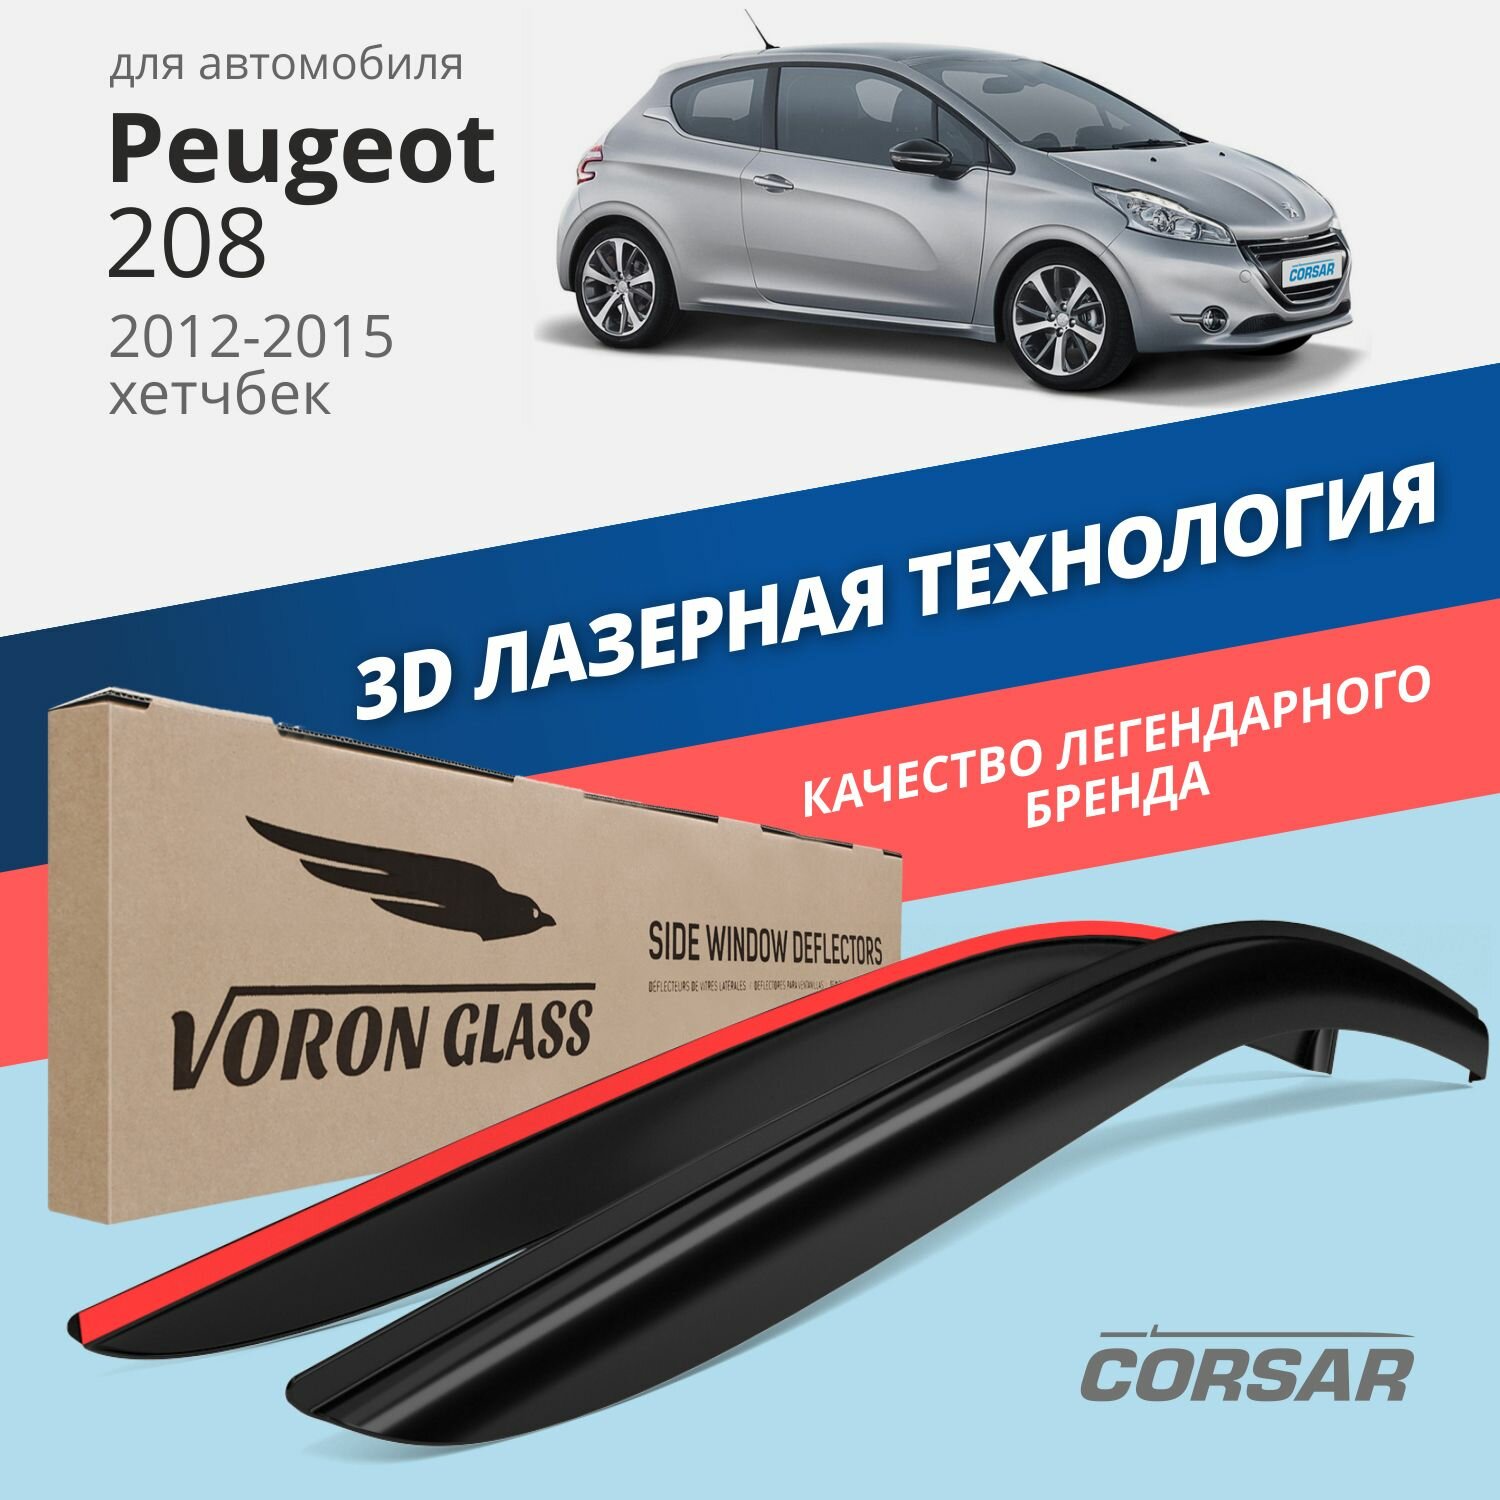 Дефлекторы окон Voron Glass серия Corsar для Peugeot 208 2012-2015 /хетчбек накладные 2 шт.